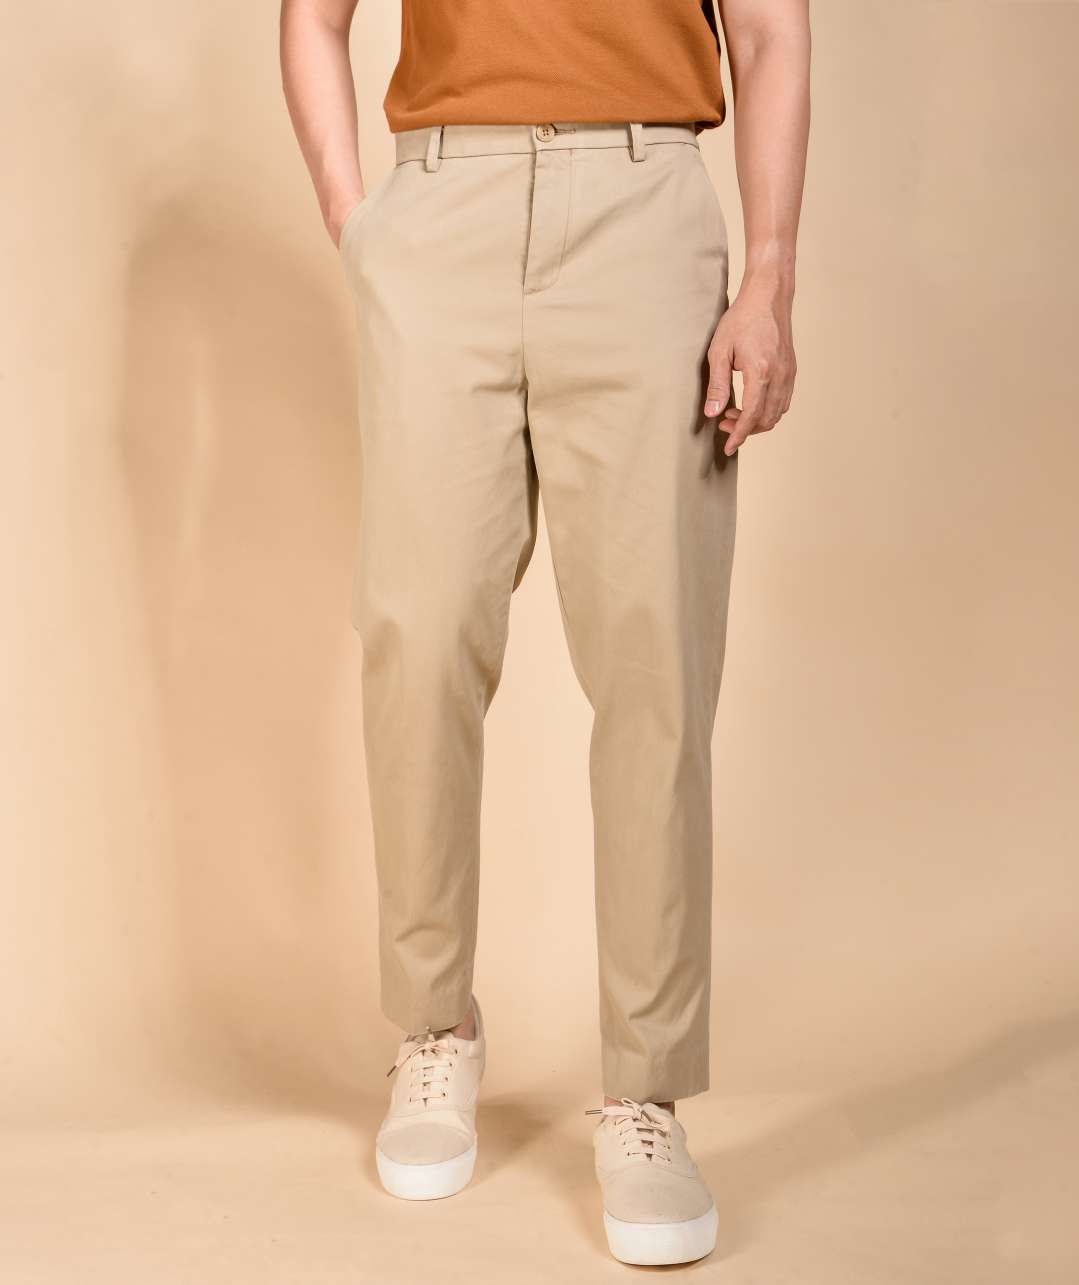 Zara | Pants | Nwt Zara Man Tan Relax Fit Pleated Carrot Fit Trousers Size  L | Poshmark